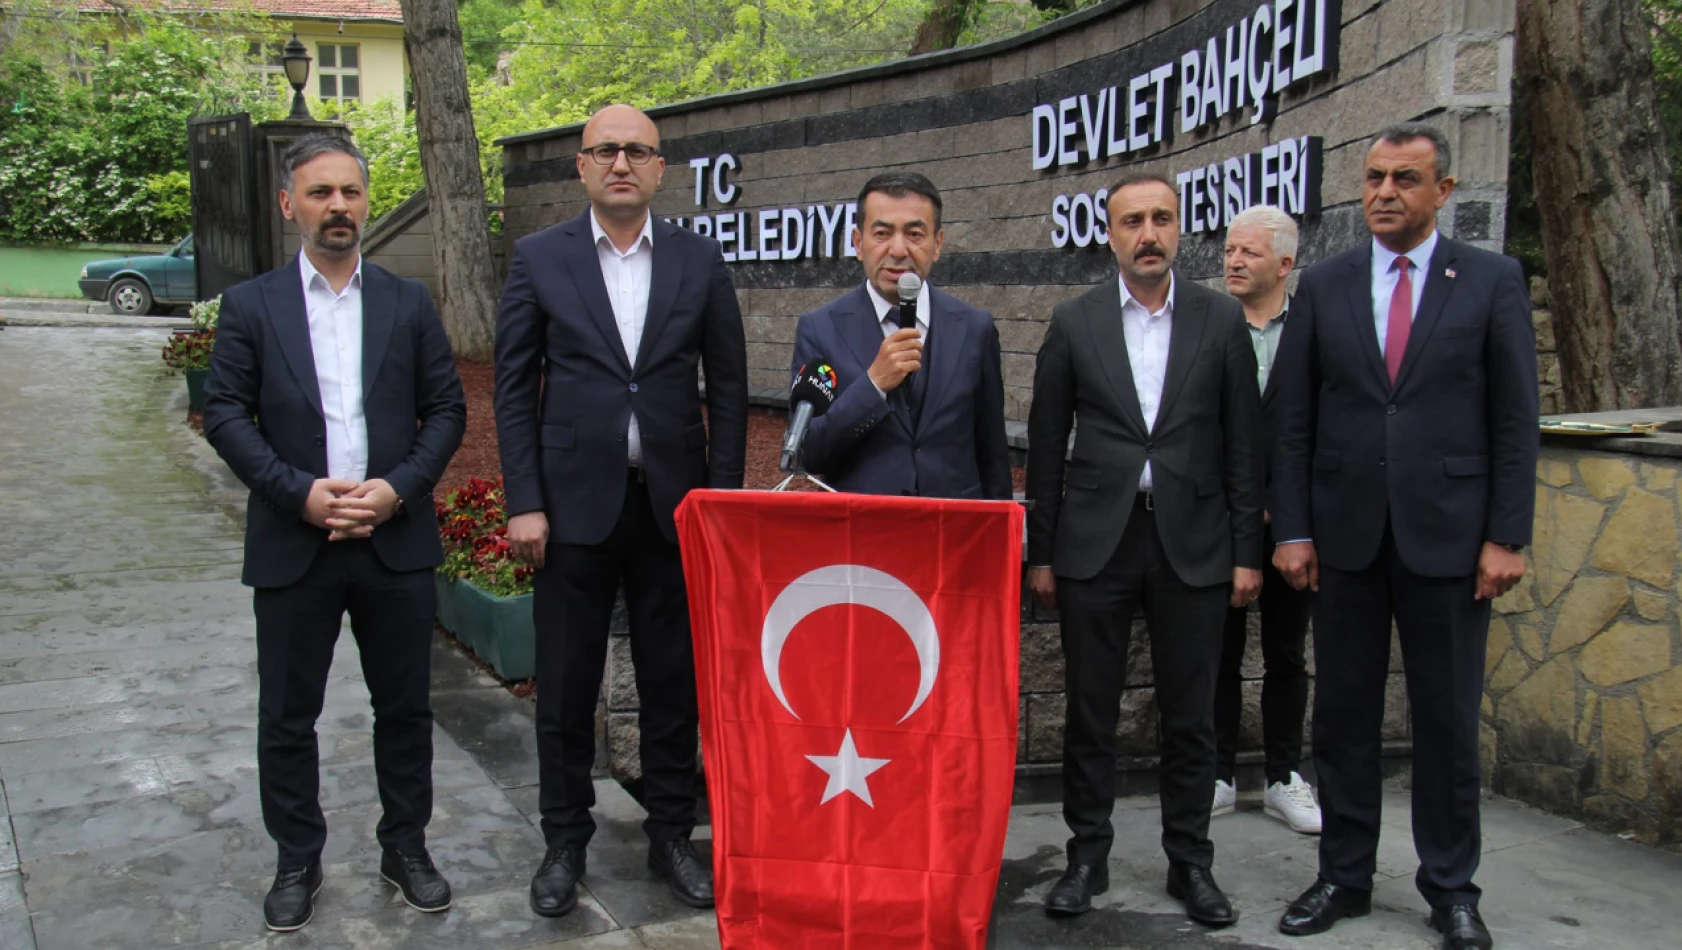 Bünyan'da Devlet Bahçeli Sosyal Tesisi açıldı